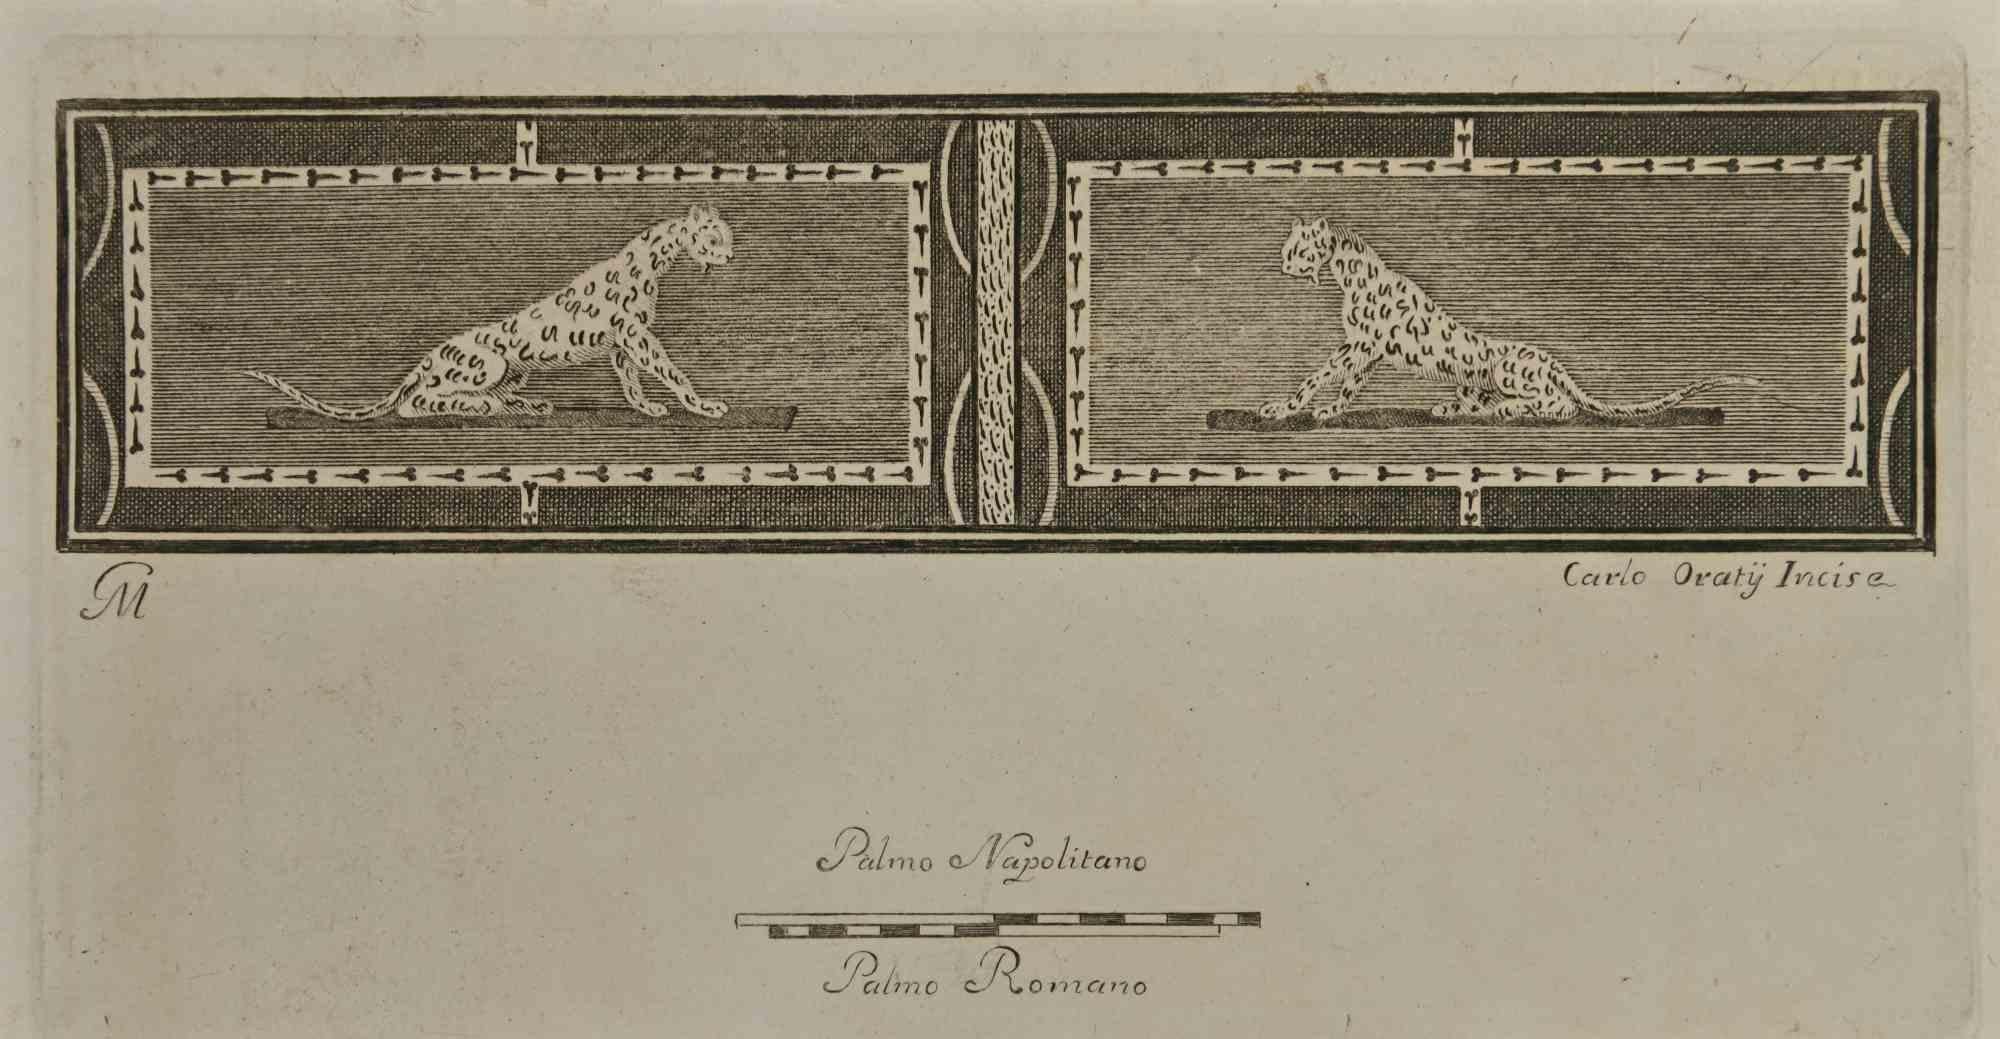 La Fresque Pompéienne de Jaguar des "Antiquités d'Herculanum" est une gravure sur papier réalisée par Carlo Oraty au 18ème siècle.

Signé sur la plaque.

Bonnes conditions.

La gravure appartient à la suite d'estampes "Antiquités d'Herculanum